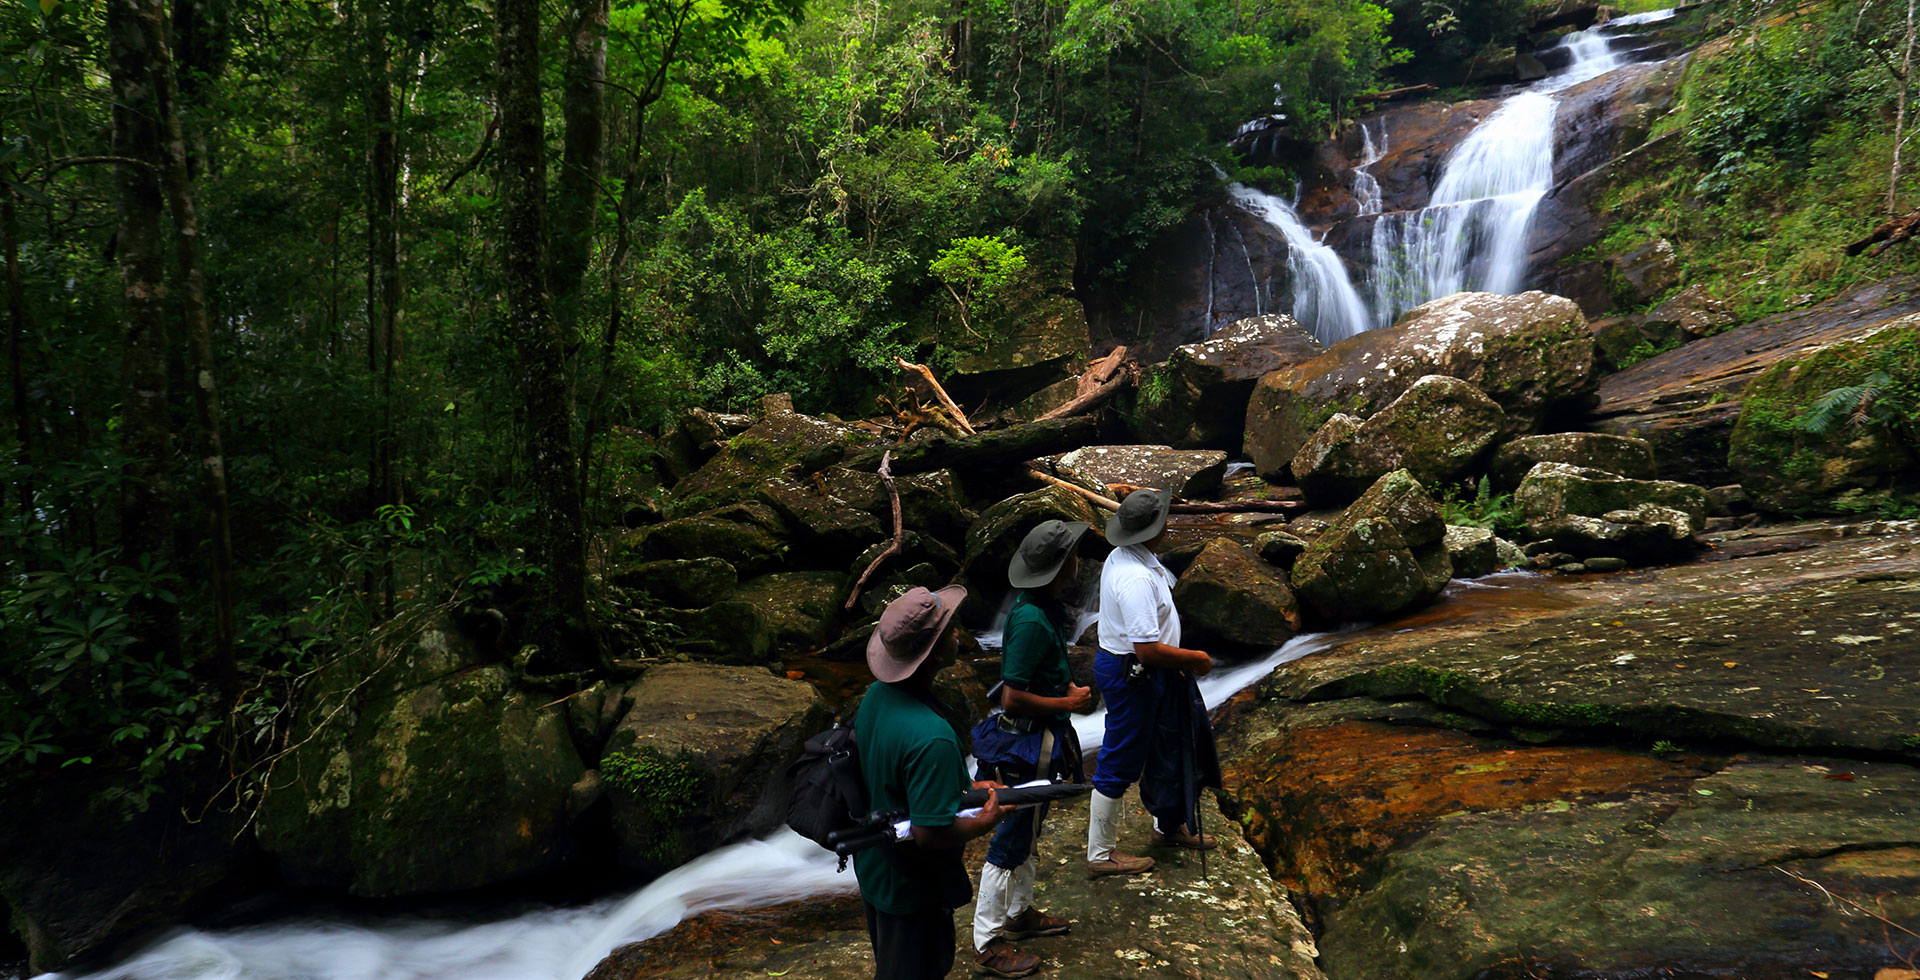 Turister går op ad nogle klipper, der fører til et lille vandfald